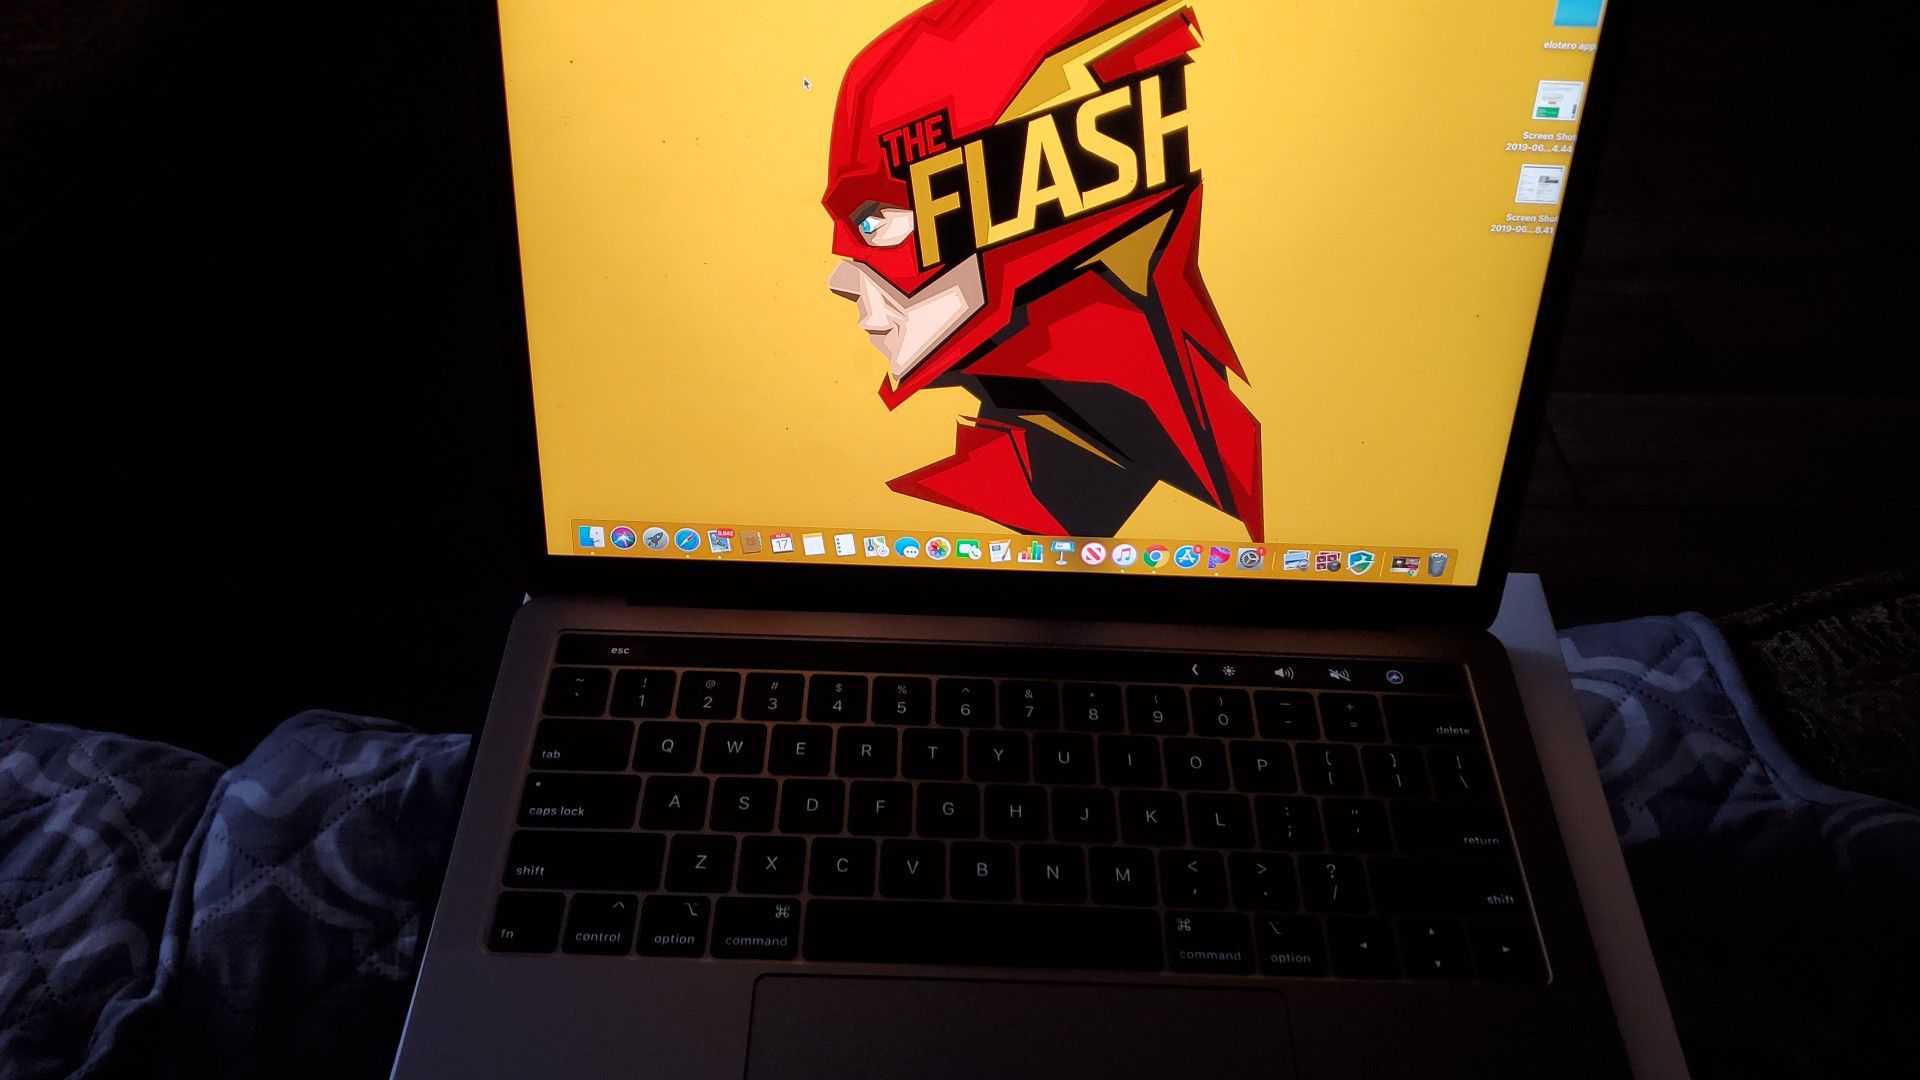 2018 Macbook pro with touchbar